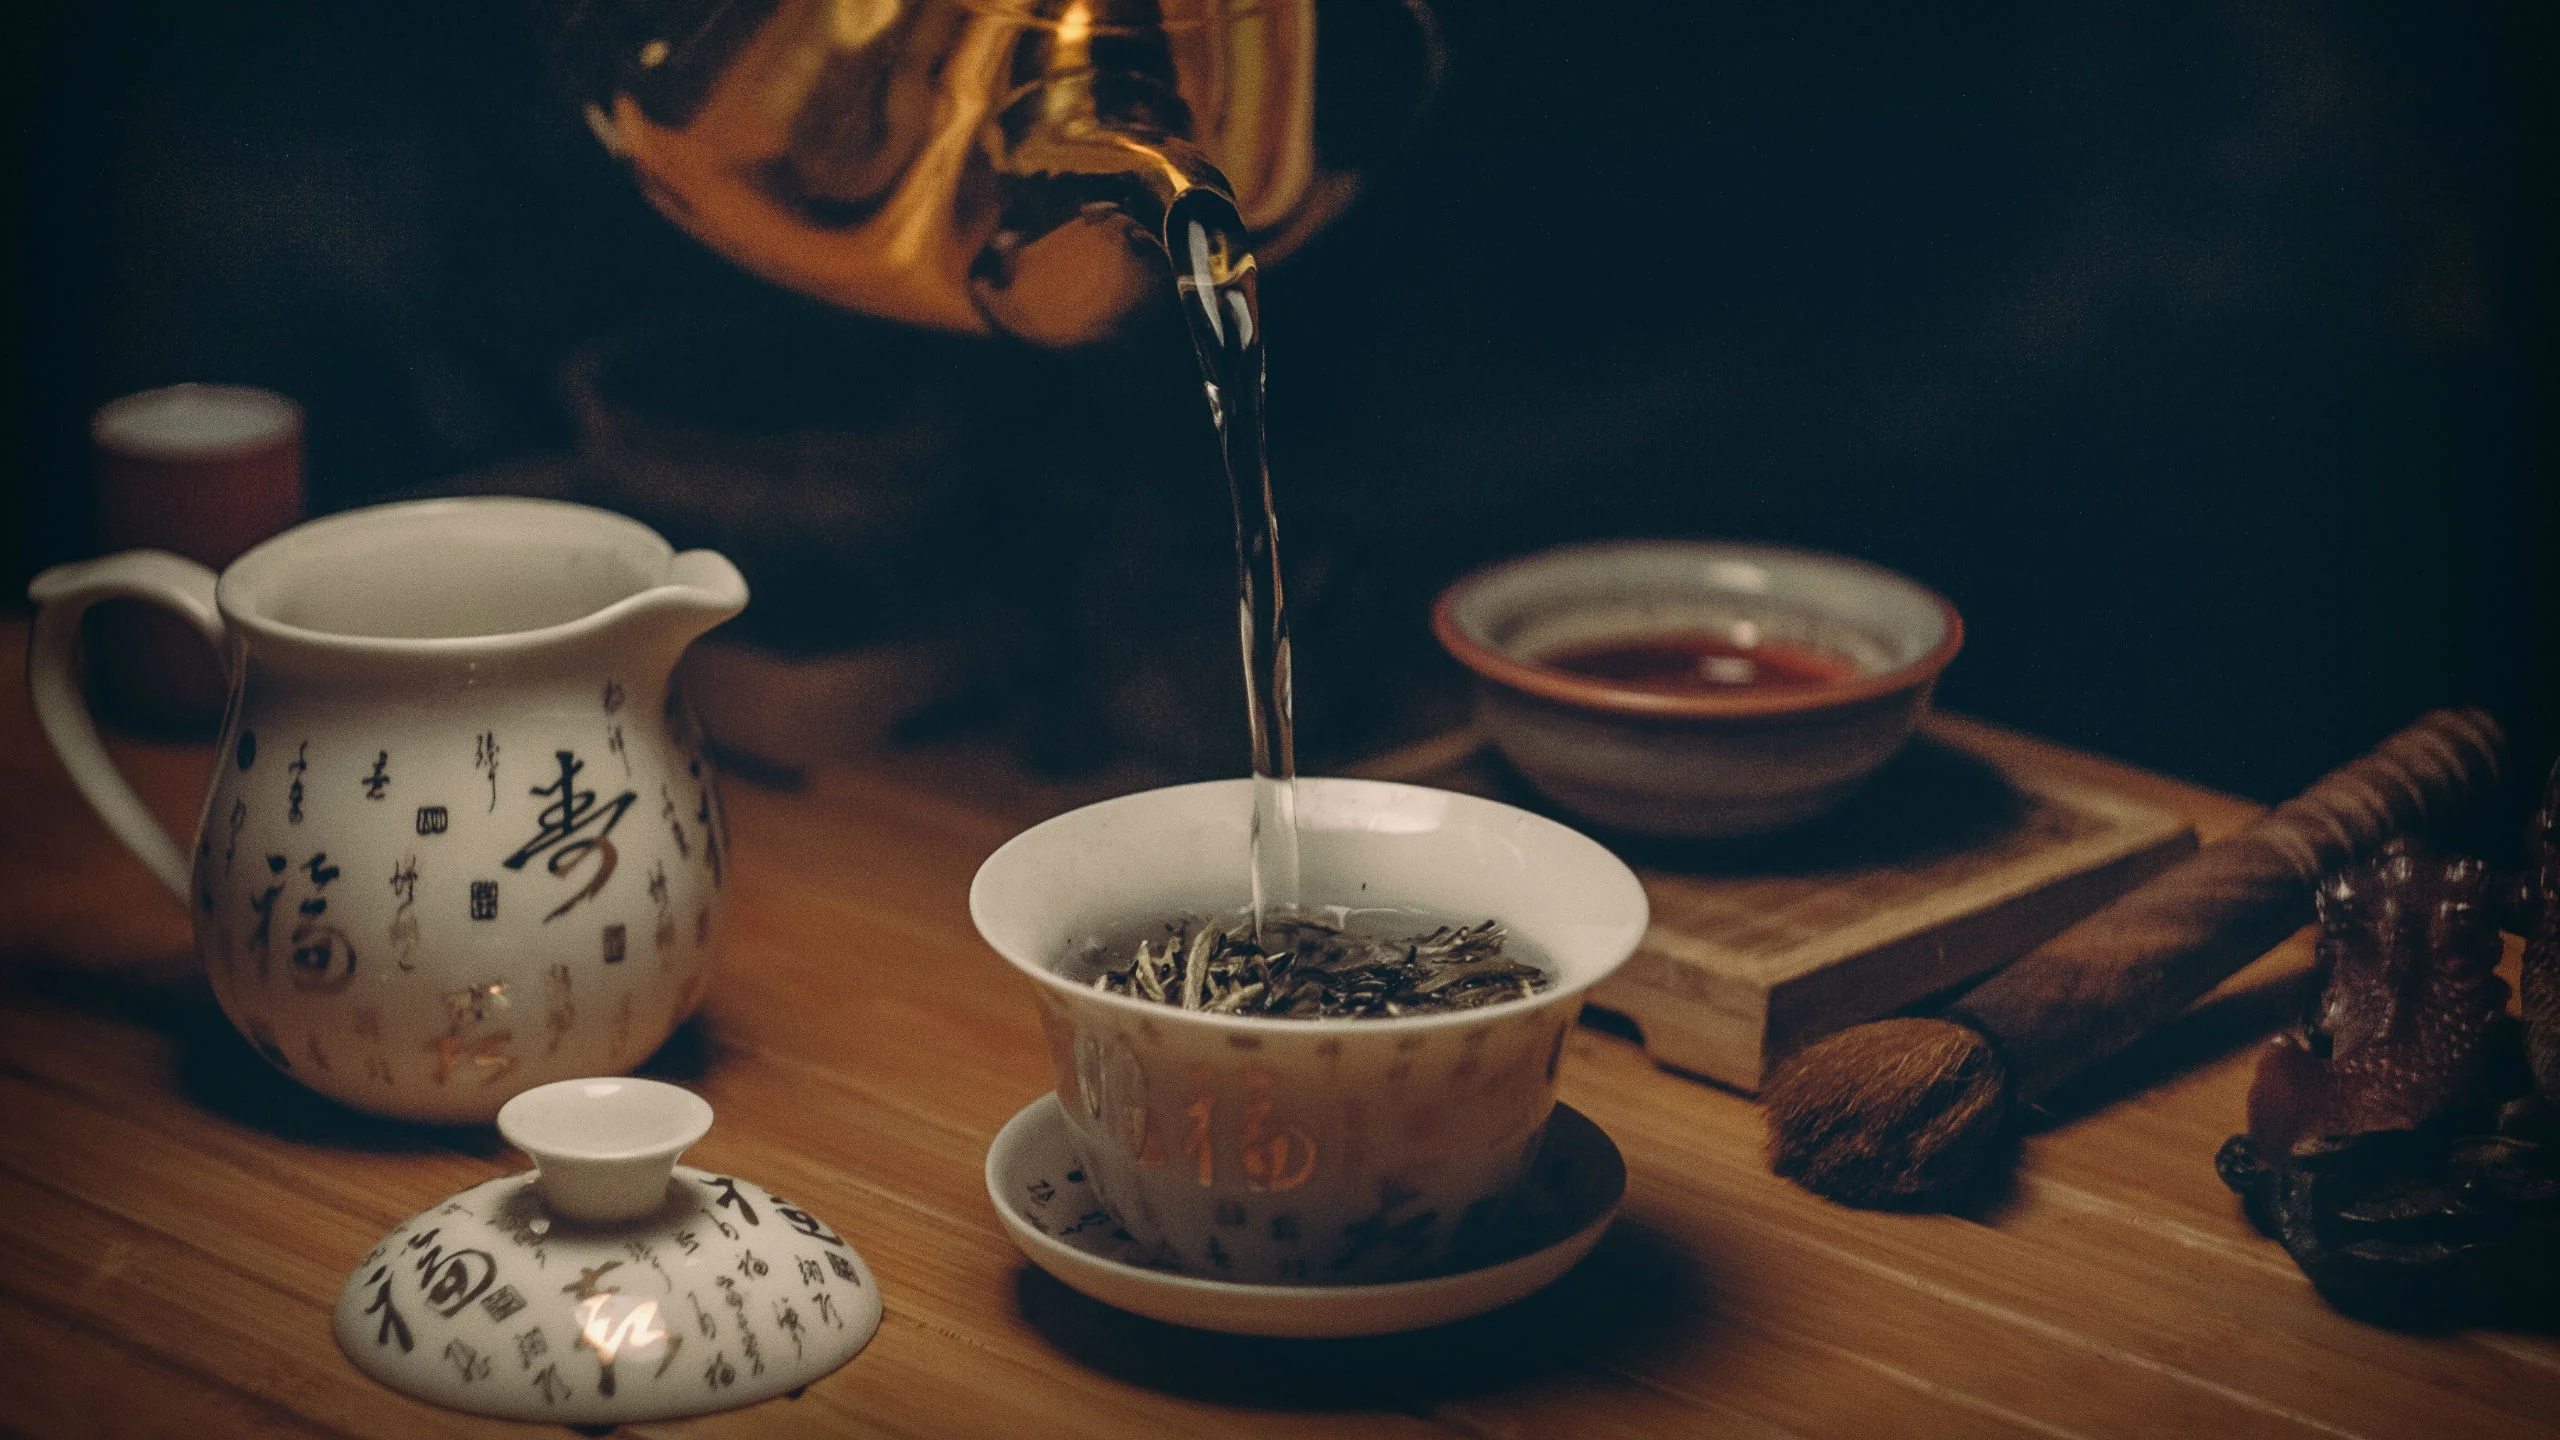 Una experta nos habló de los mitos y realidades del té